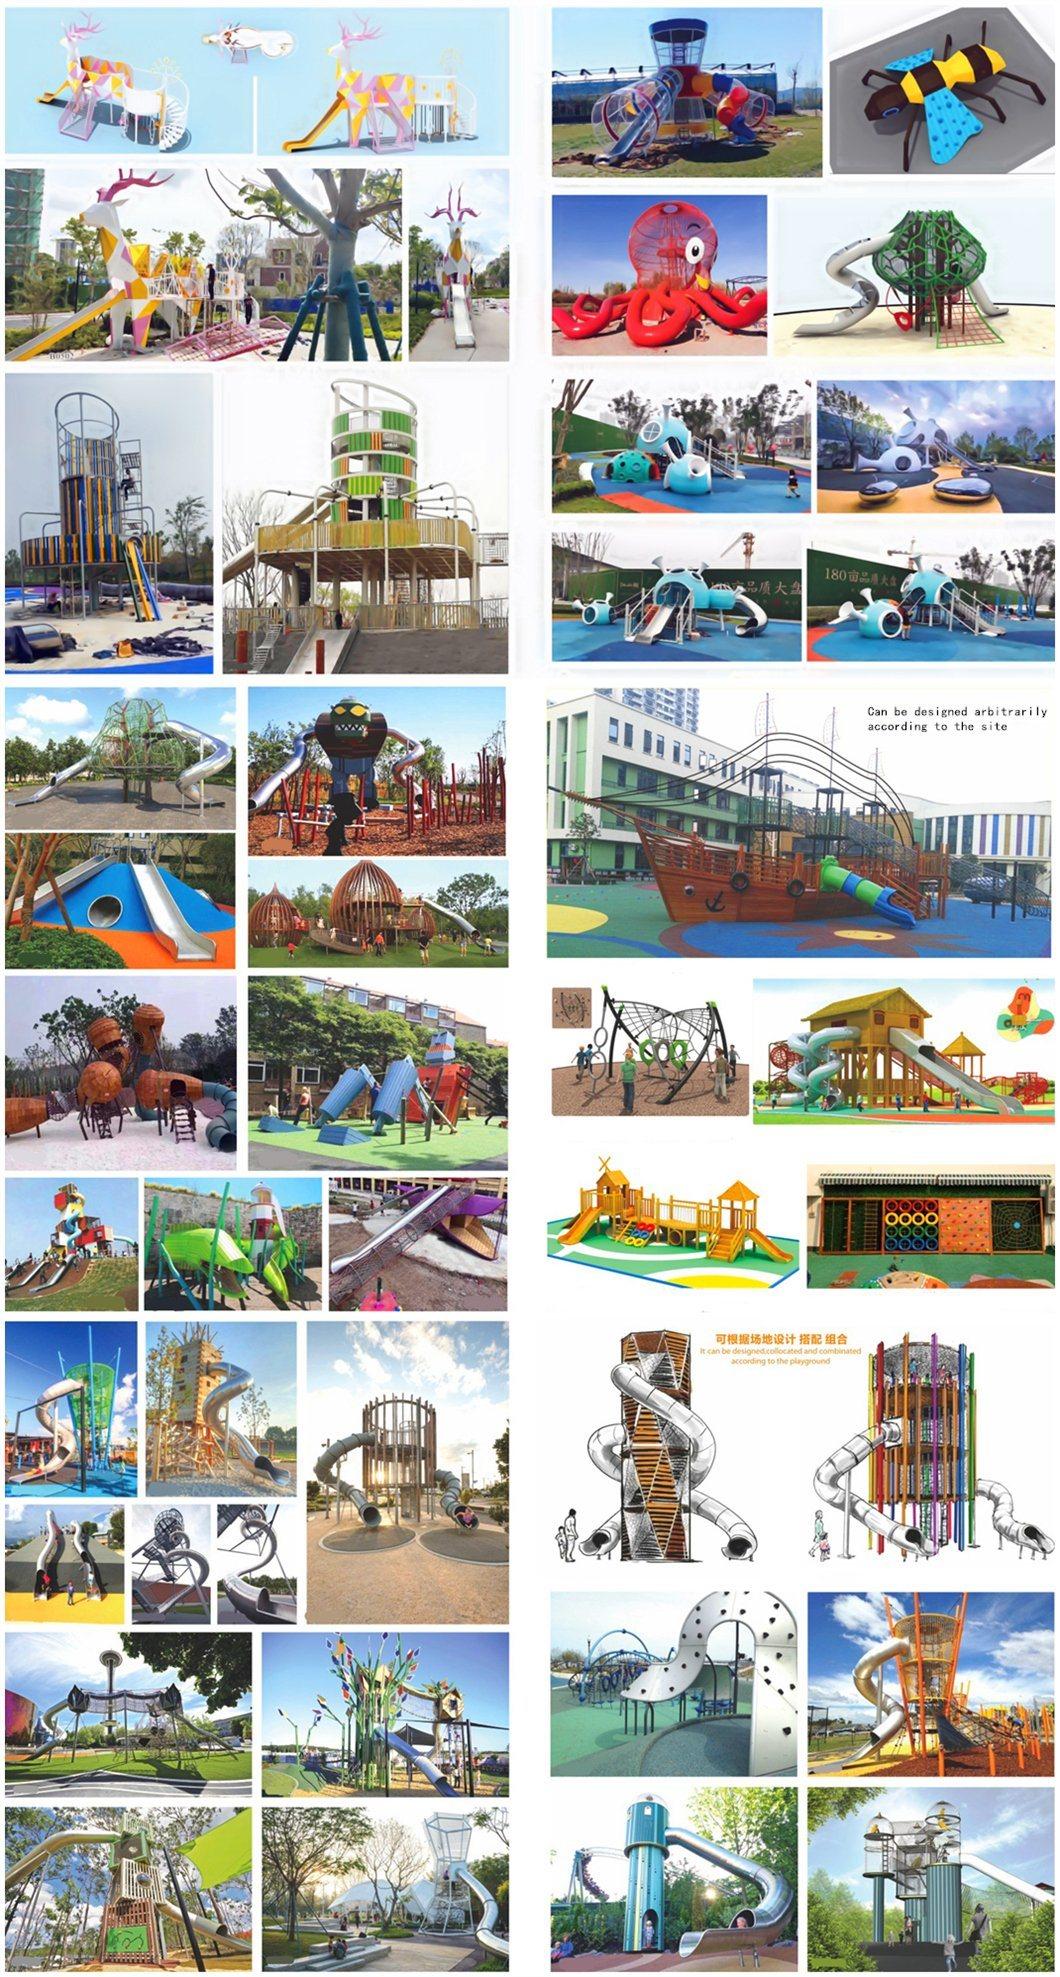 Outdoor Kids Pyramid Crawl Slide Park Scenic Playground Equipment